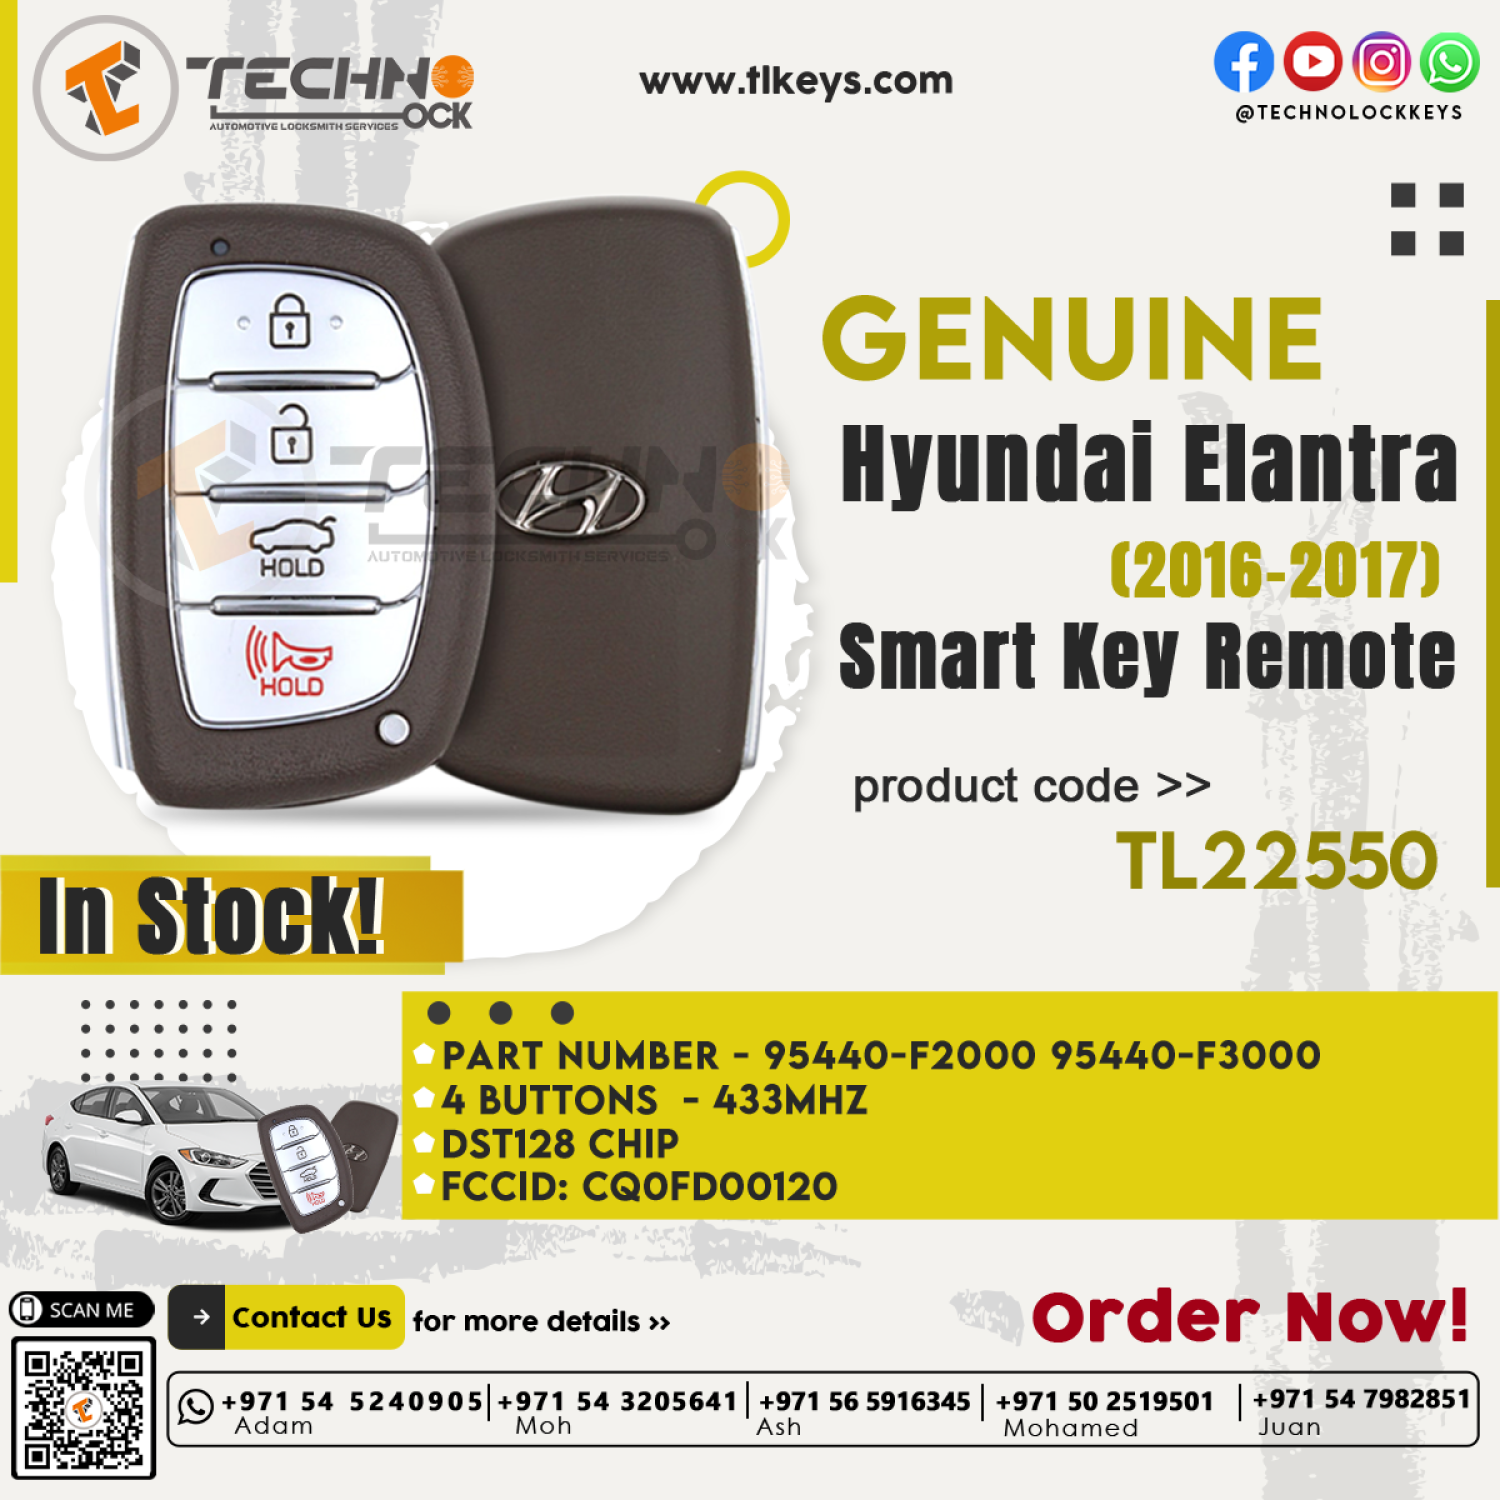 Genuine Smart Proximity Remote for Hyundai Elantra - Part Number 95440-F3000